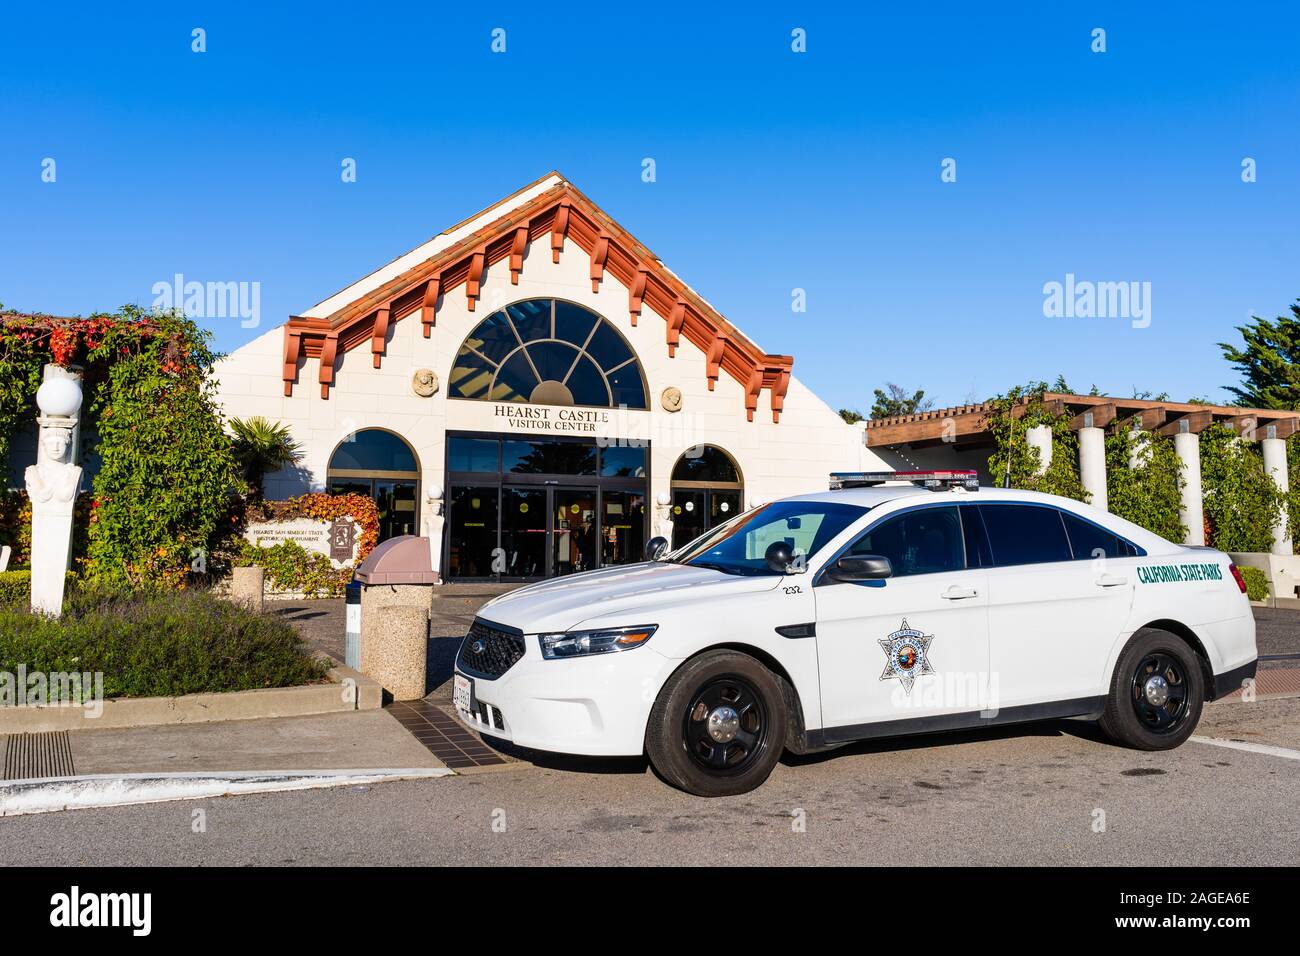 Dezember 9, 2019 San Simeon/CA/USA - California State Parks Friedensoffizier Fahrzeug vor Hearst Castle Besucherzentrum geparkt Gebäude in der Nähe t Stockfoto